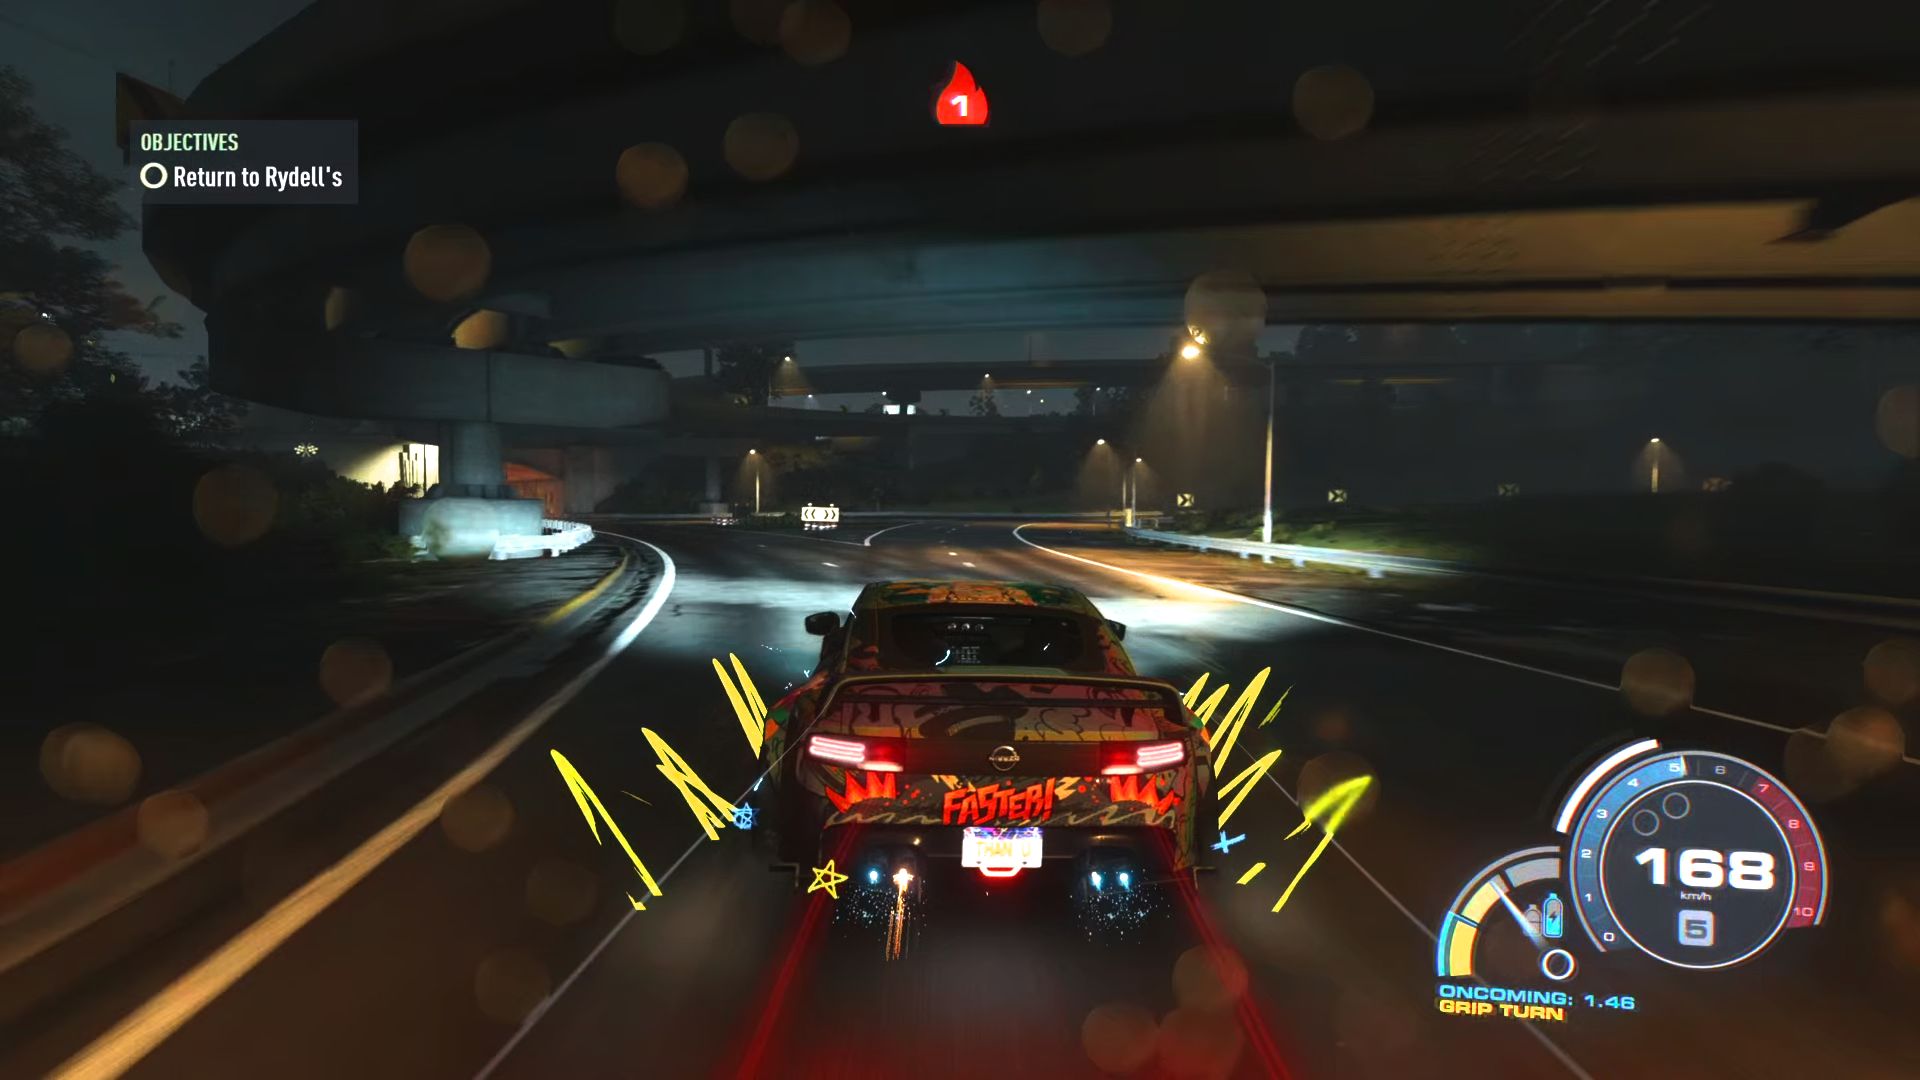 Um carro de corrida de rua estiloso é visto dirigindo sob uma passagem subterrânea à noite com as luzes de neon de Unbound e efeitos de cores vibrantes emanando do carro após o aumento.